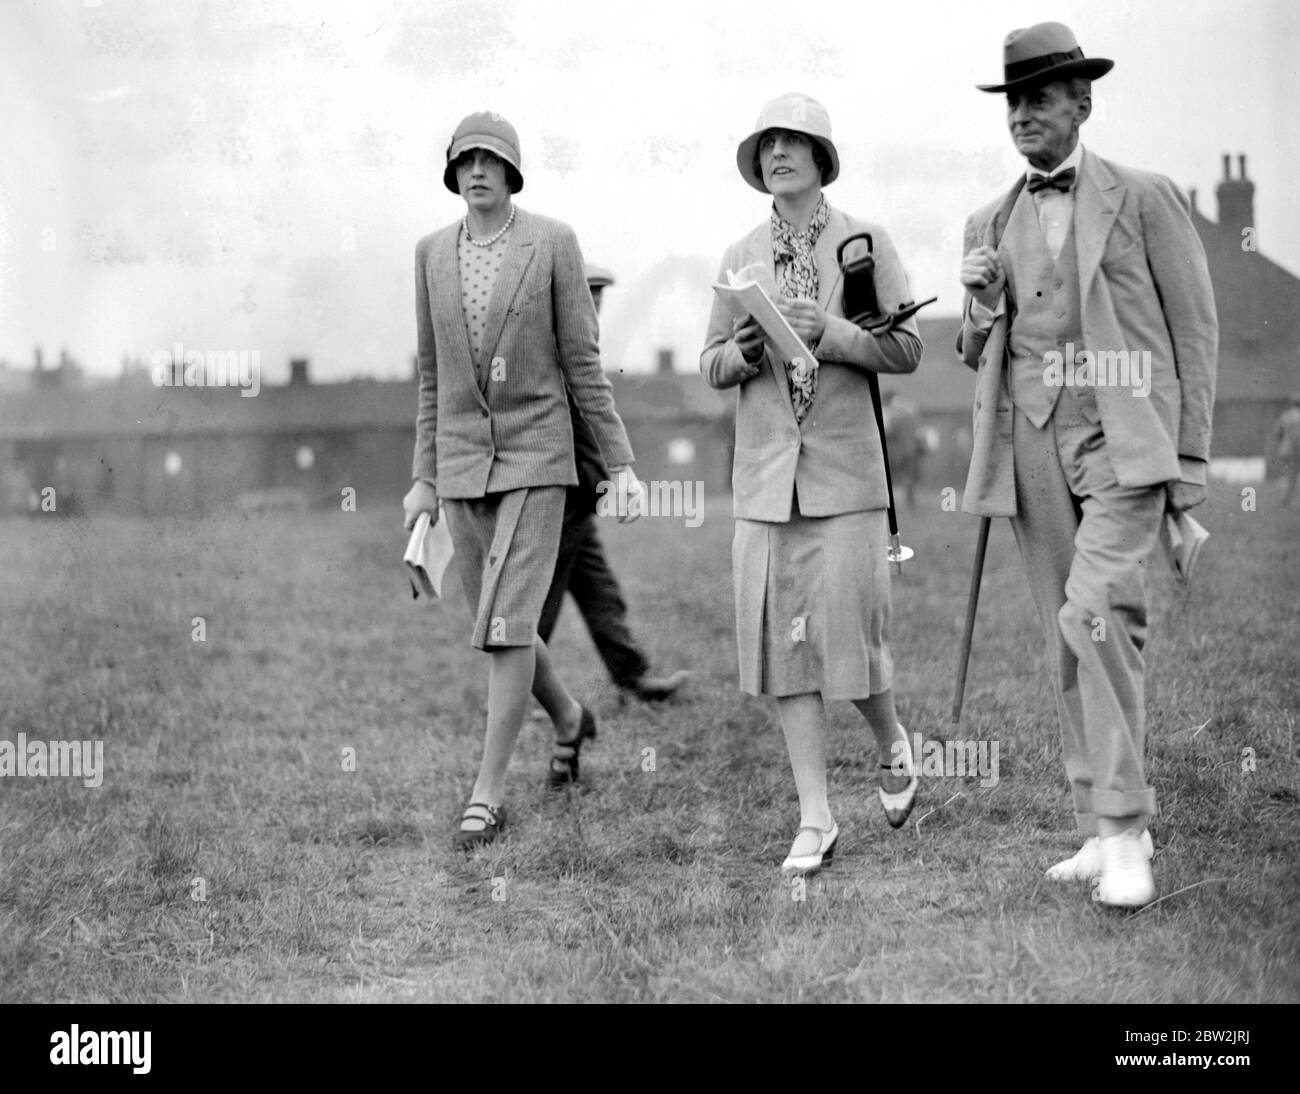 Ventes Doncaster. Lady Hillingdon, Mme Euan Wallace et l'honorable George Lambton. 1928 Banque D'Images